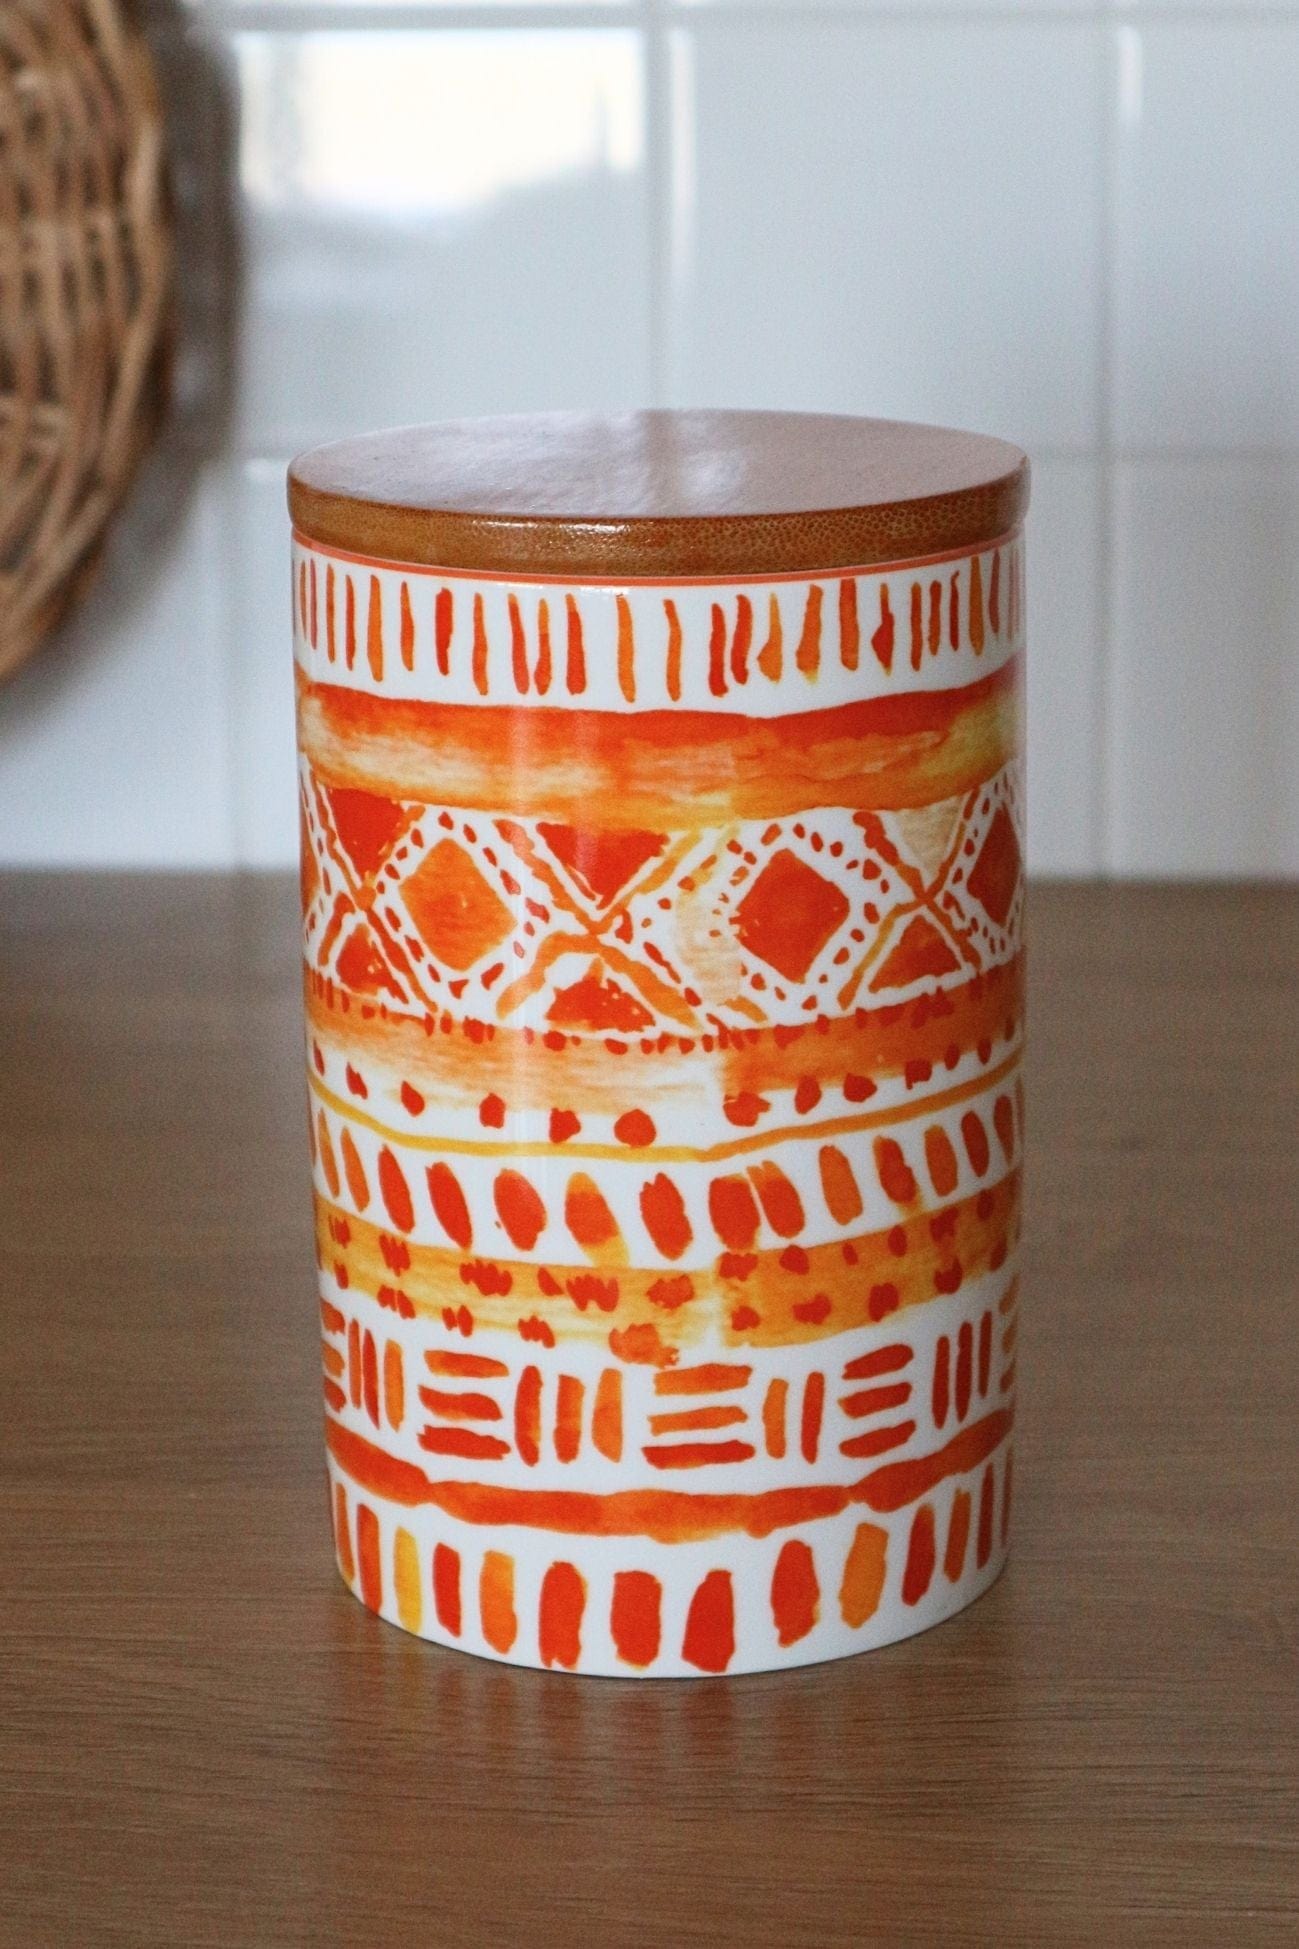 Item International Tribal Tribal - Barattolo in ceramica in stile etnico | Item International Alto